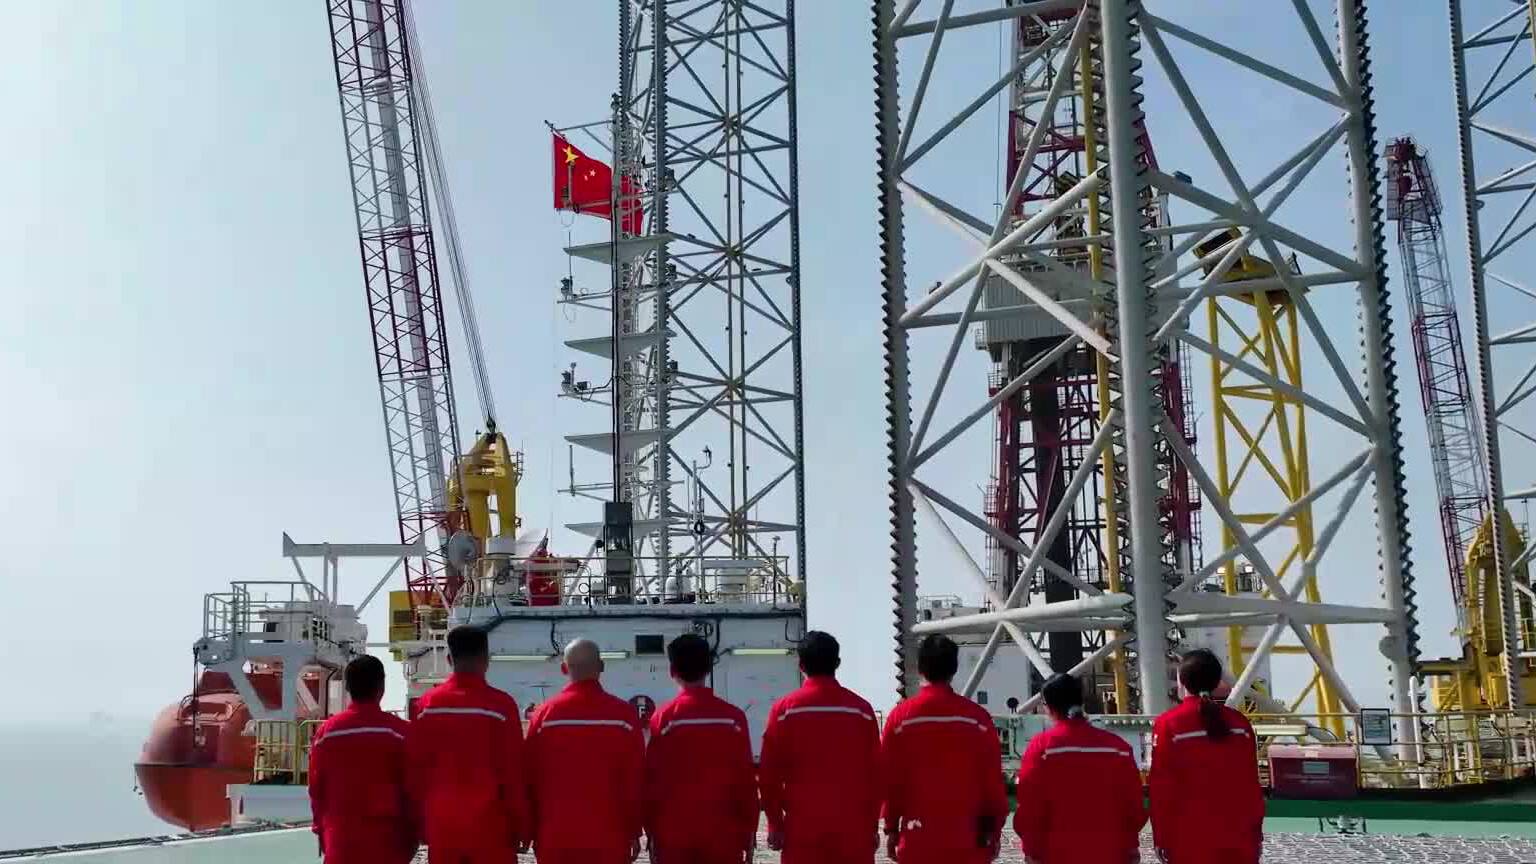 同升一面国旗 海上作业平台员工为祖国献上石油工人的祝福